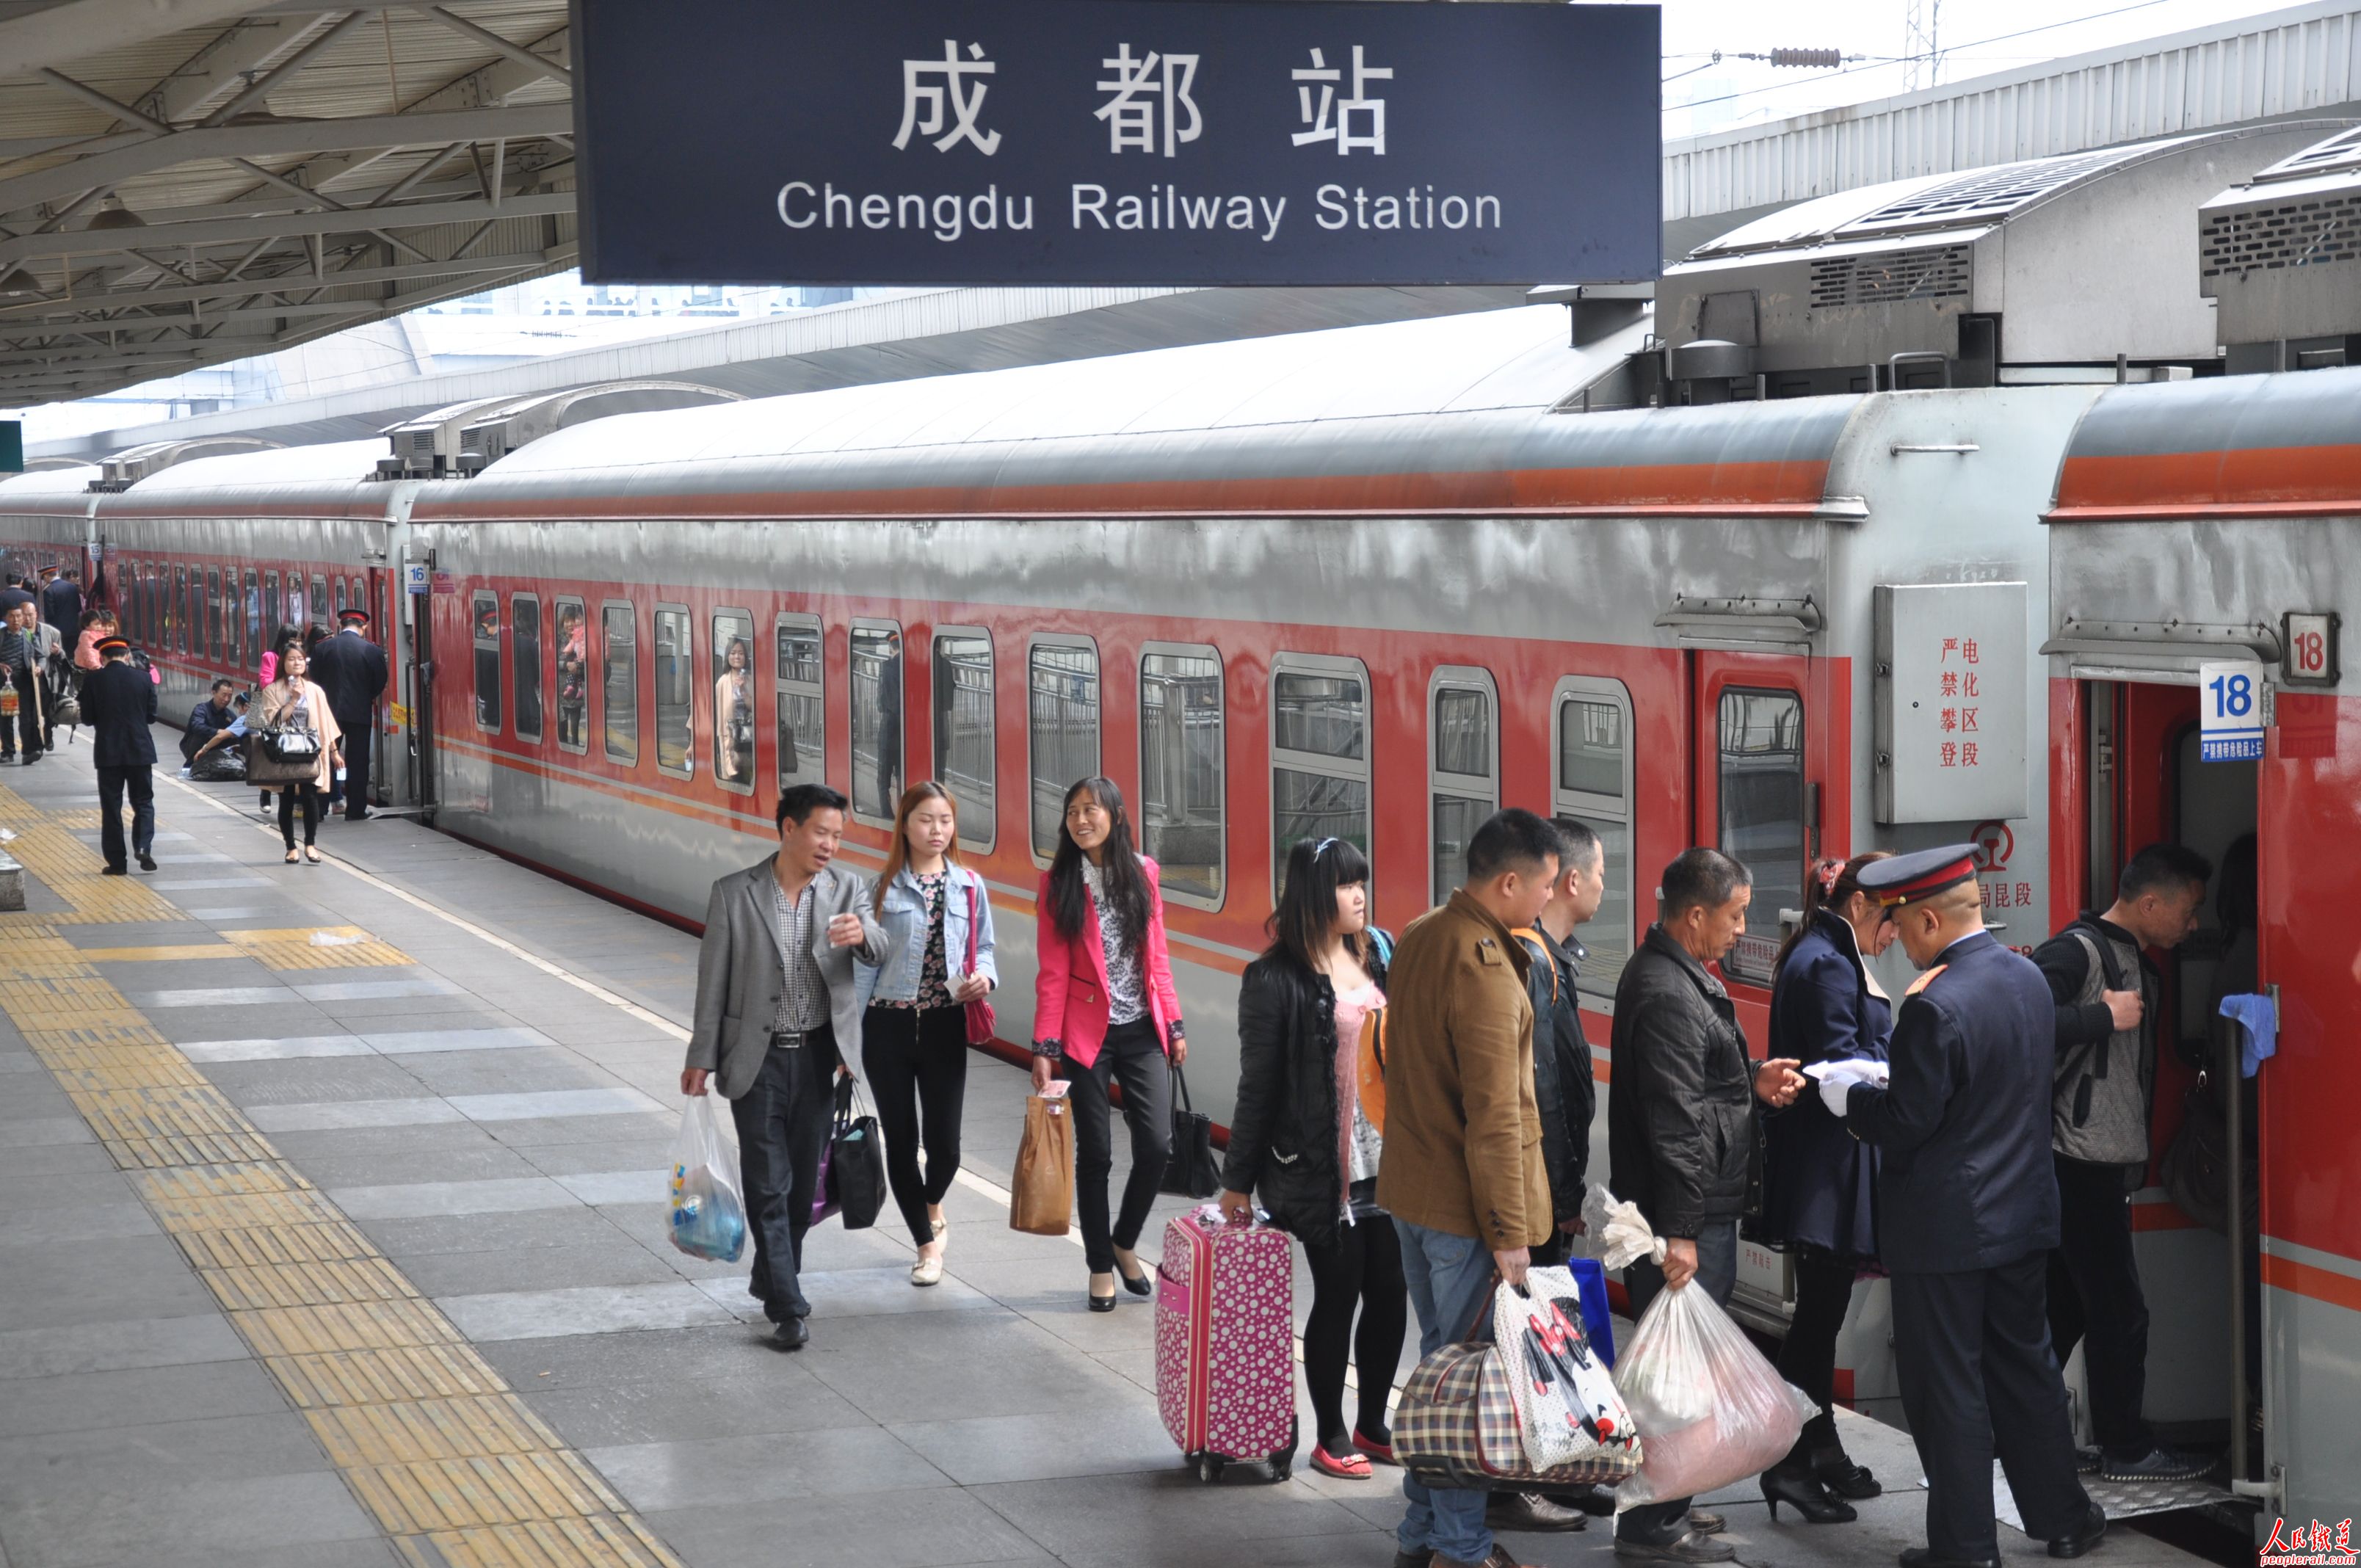 Train from Chengdu to Kunming